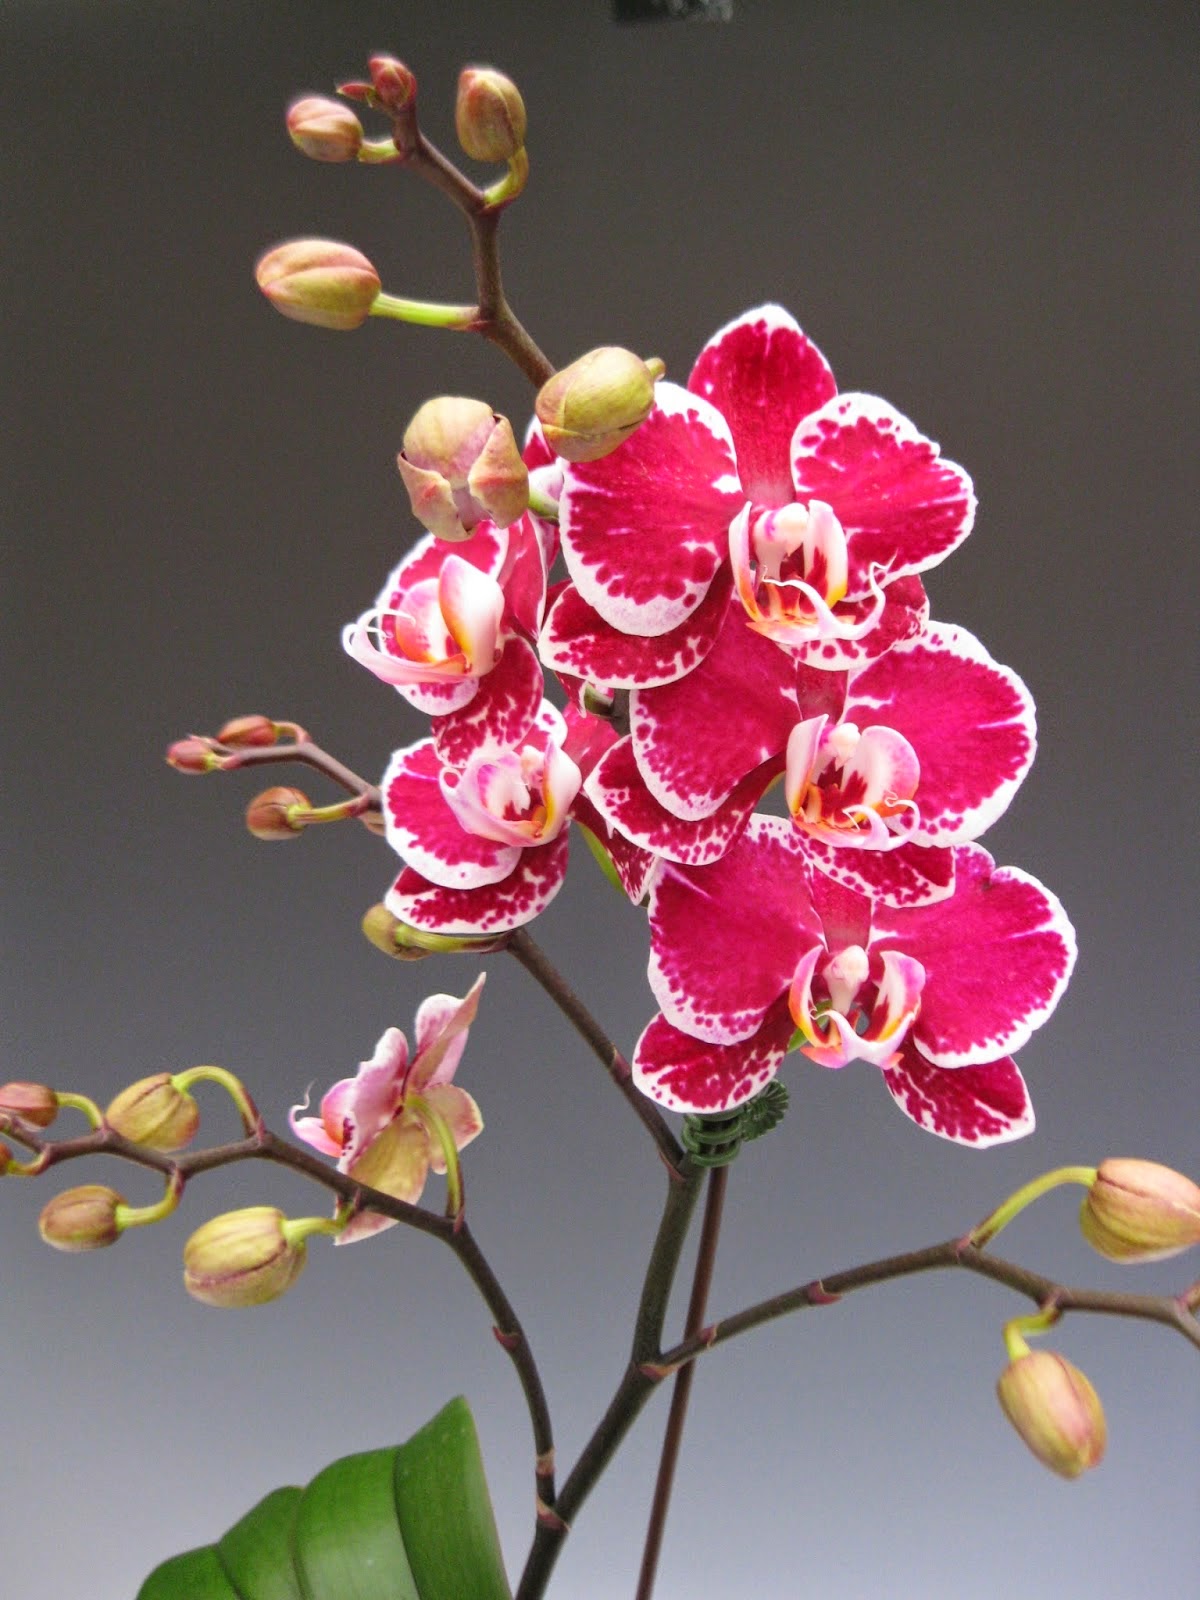 Cây lan hồ điệp có tên khoa học là Phalaenopsis sp, đây là loại lan có hoa lớn, đẹp và bền